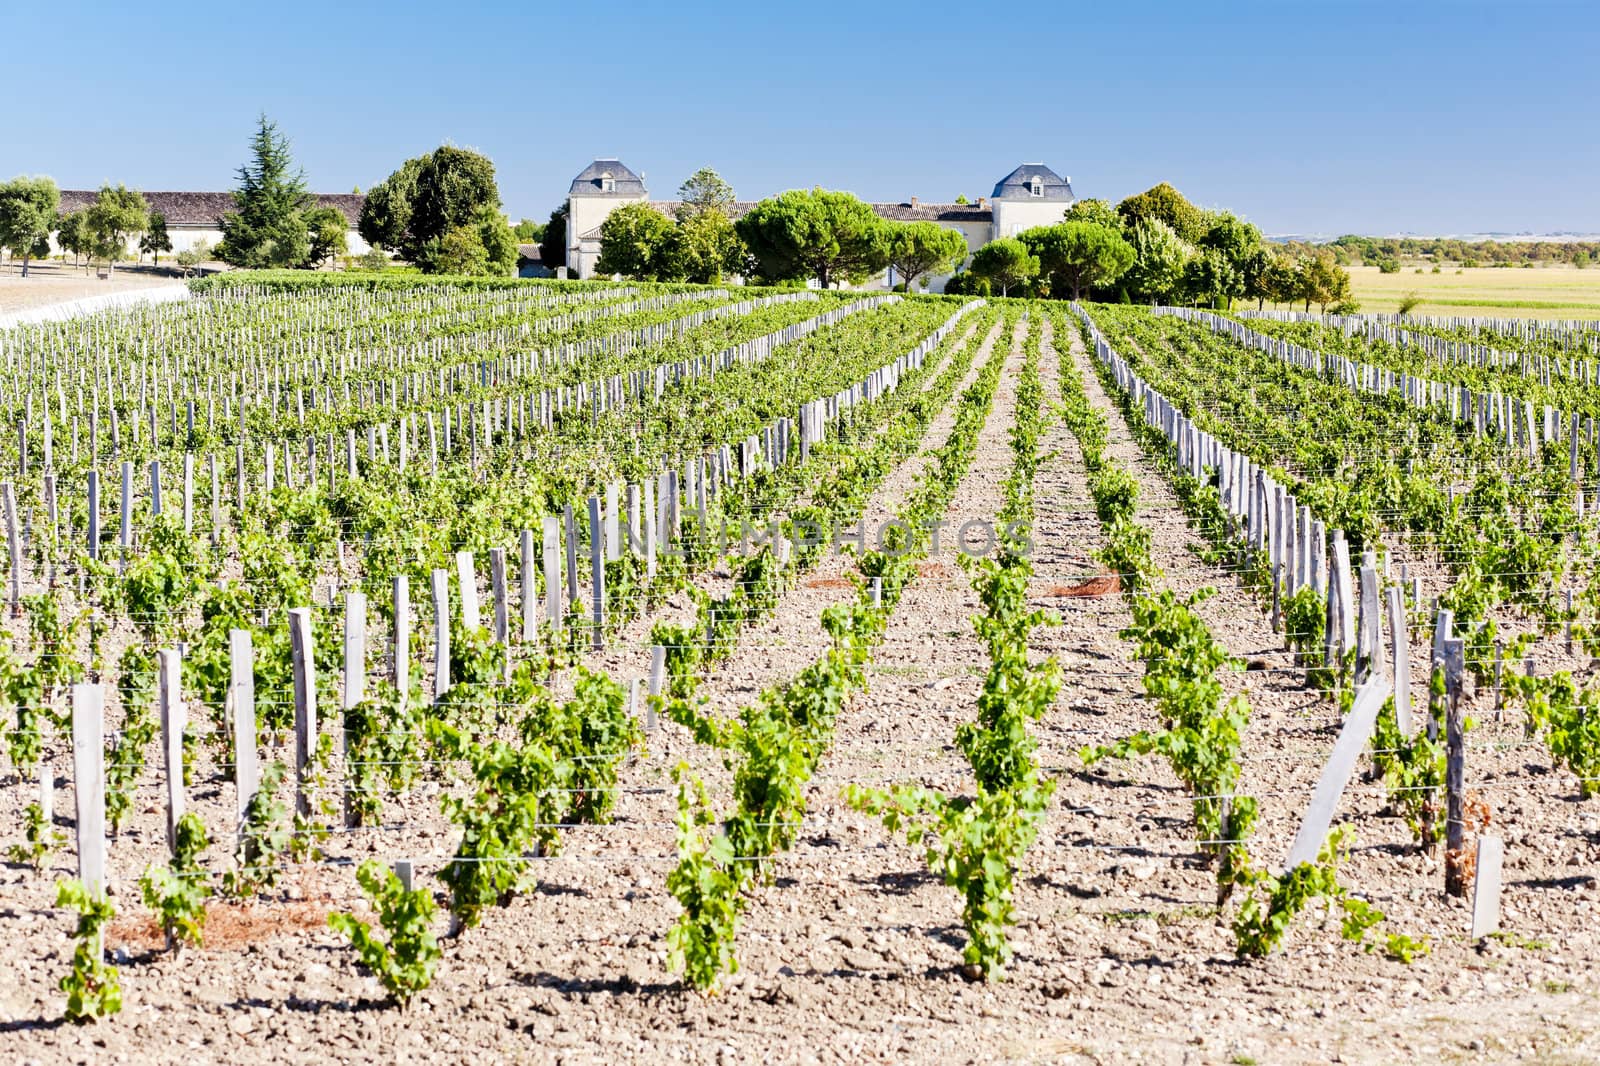 vineyard and Chateau Calon-Segur, Saint-Estephe, Bordeaux Region by phbcz